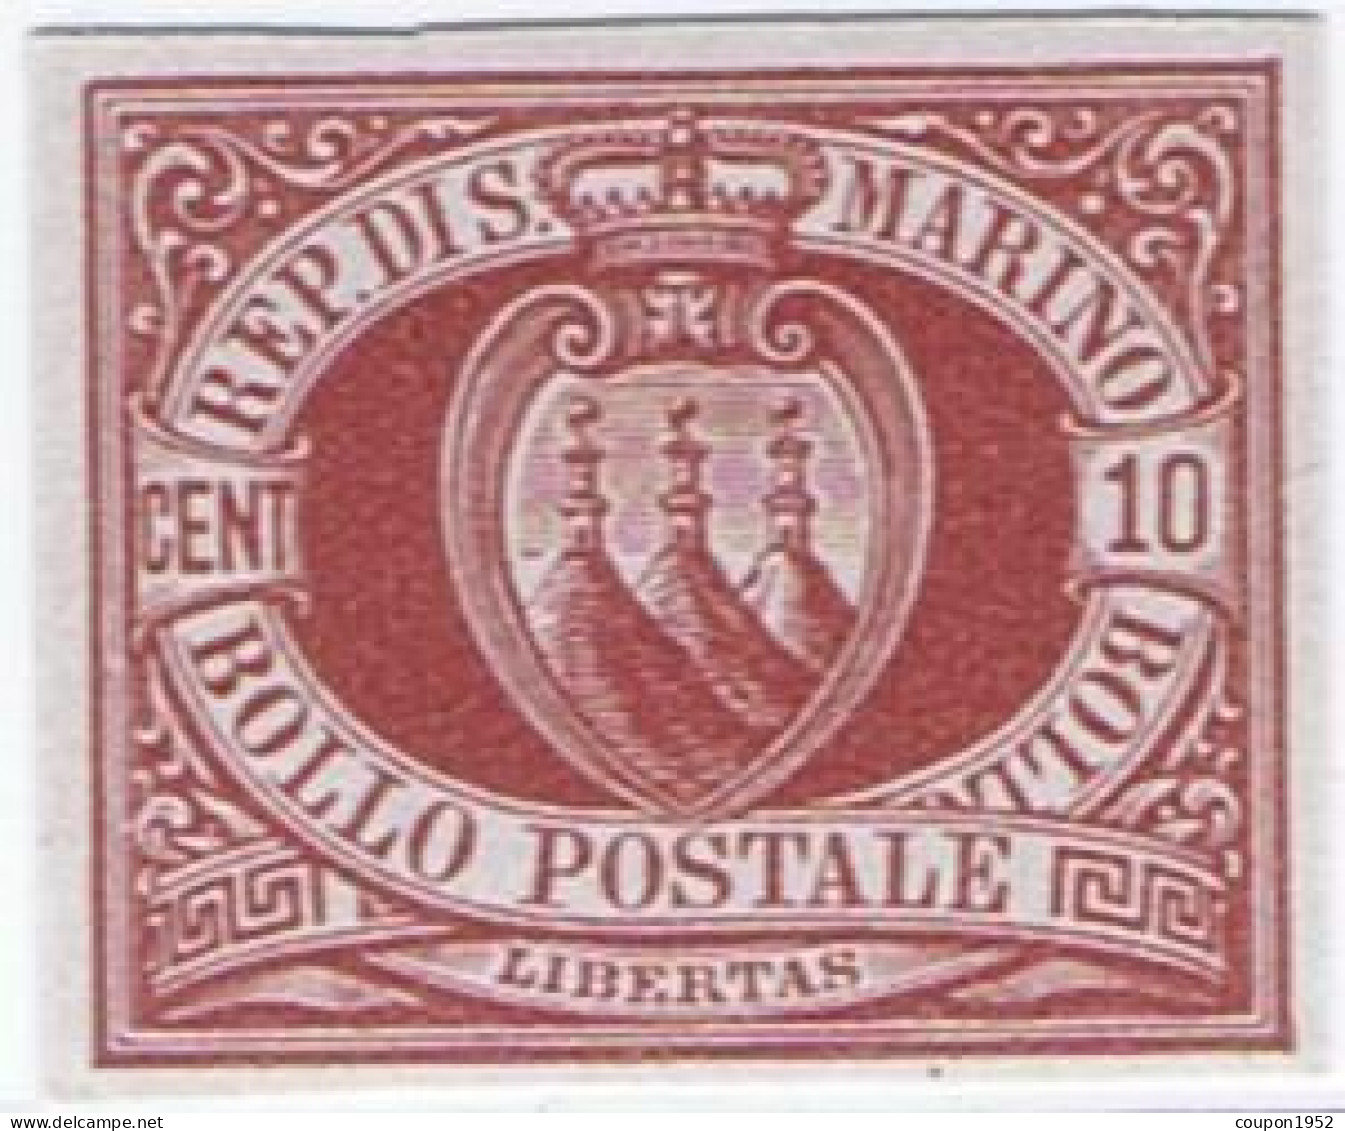 San Marino S. Marino (sm12). Stemmi. Prova Di Macchina Su Carta Grigia Del 10c Rosso Bruno Del 1899, Non Dentellata, Ott - Nuevos